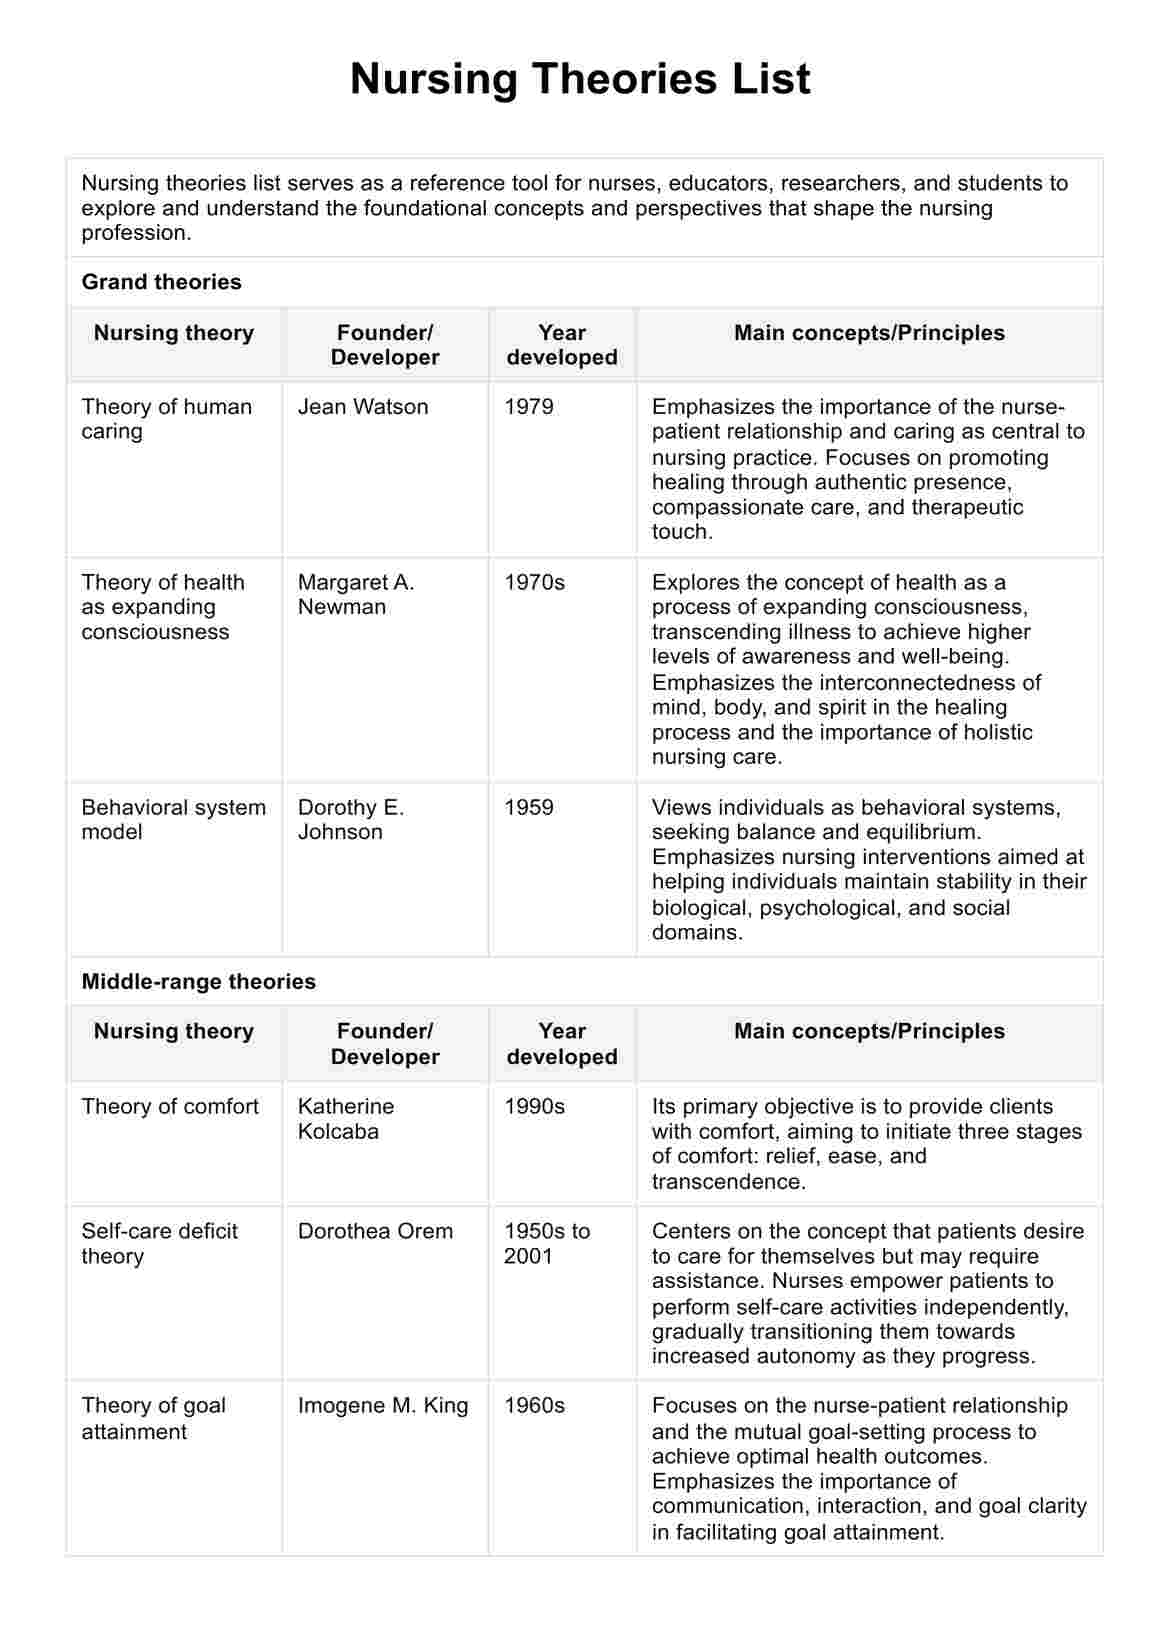 Nursing Theories PDF Example